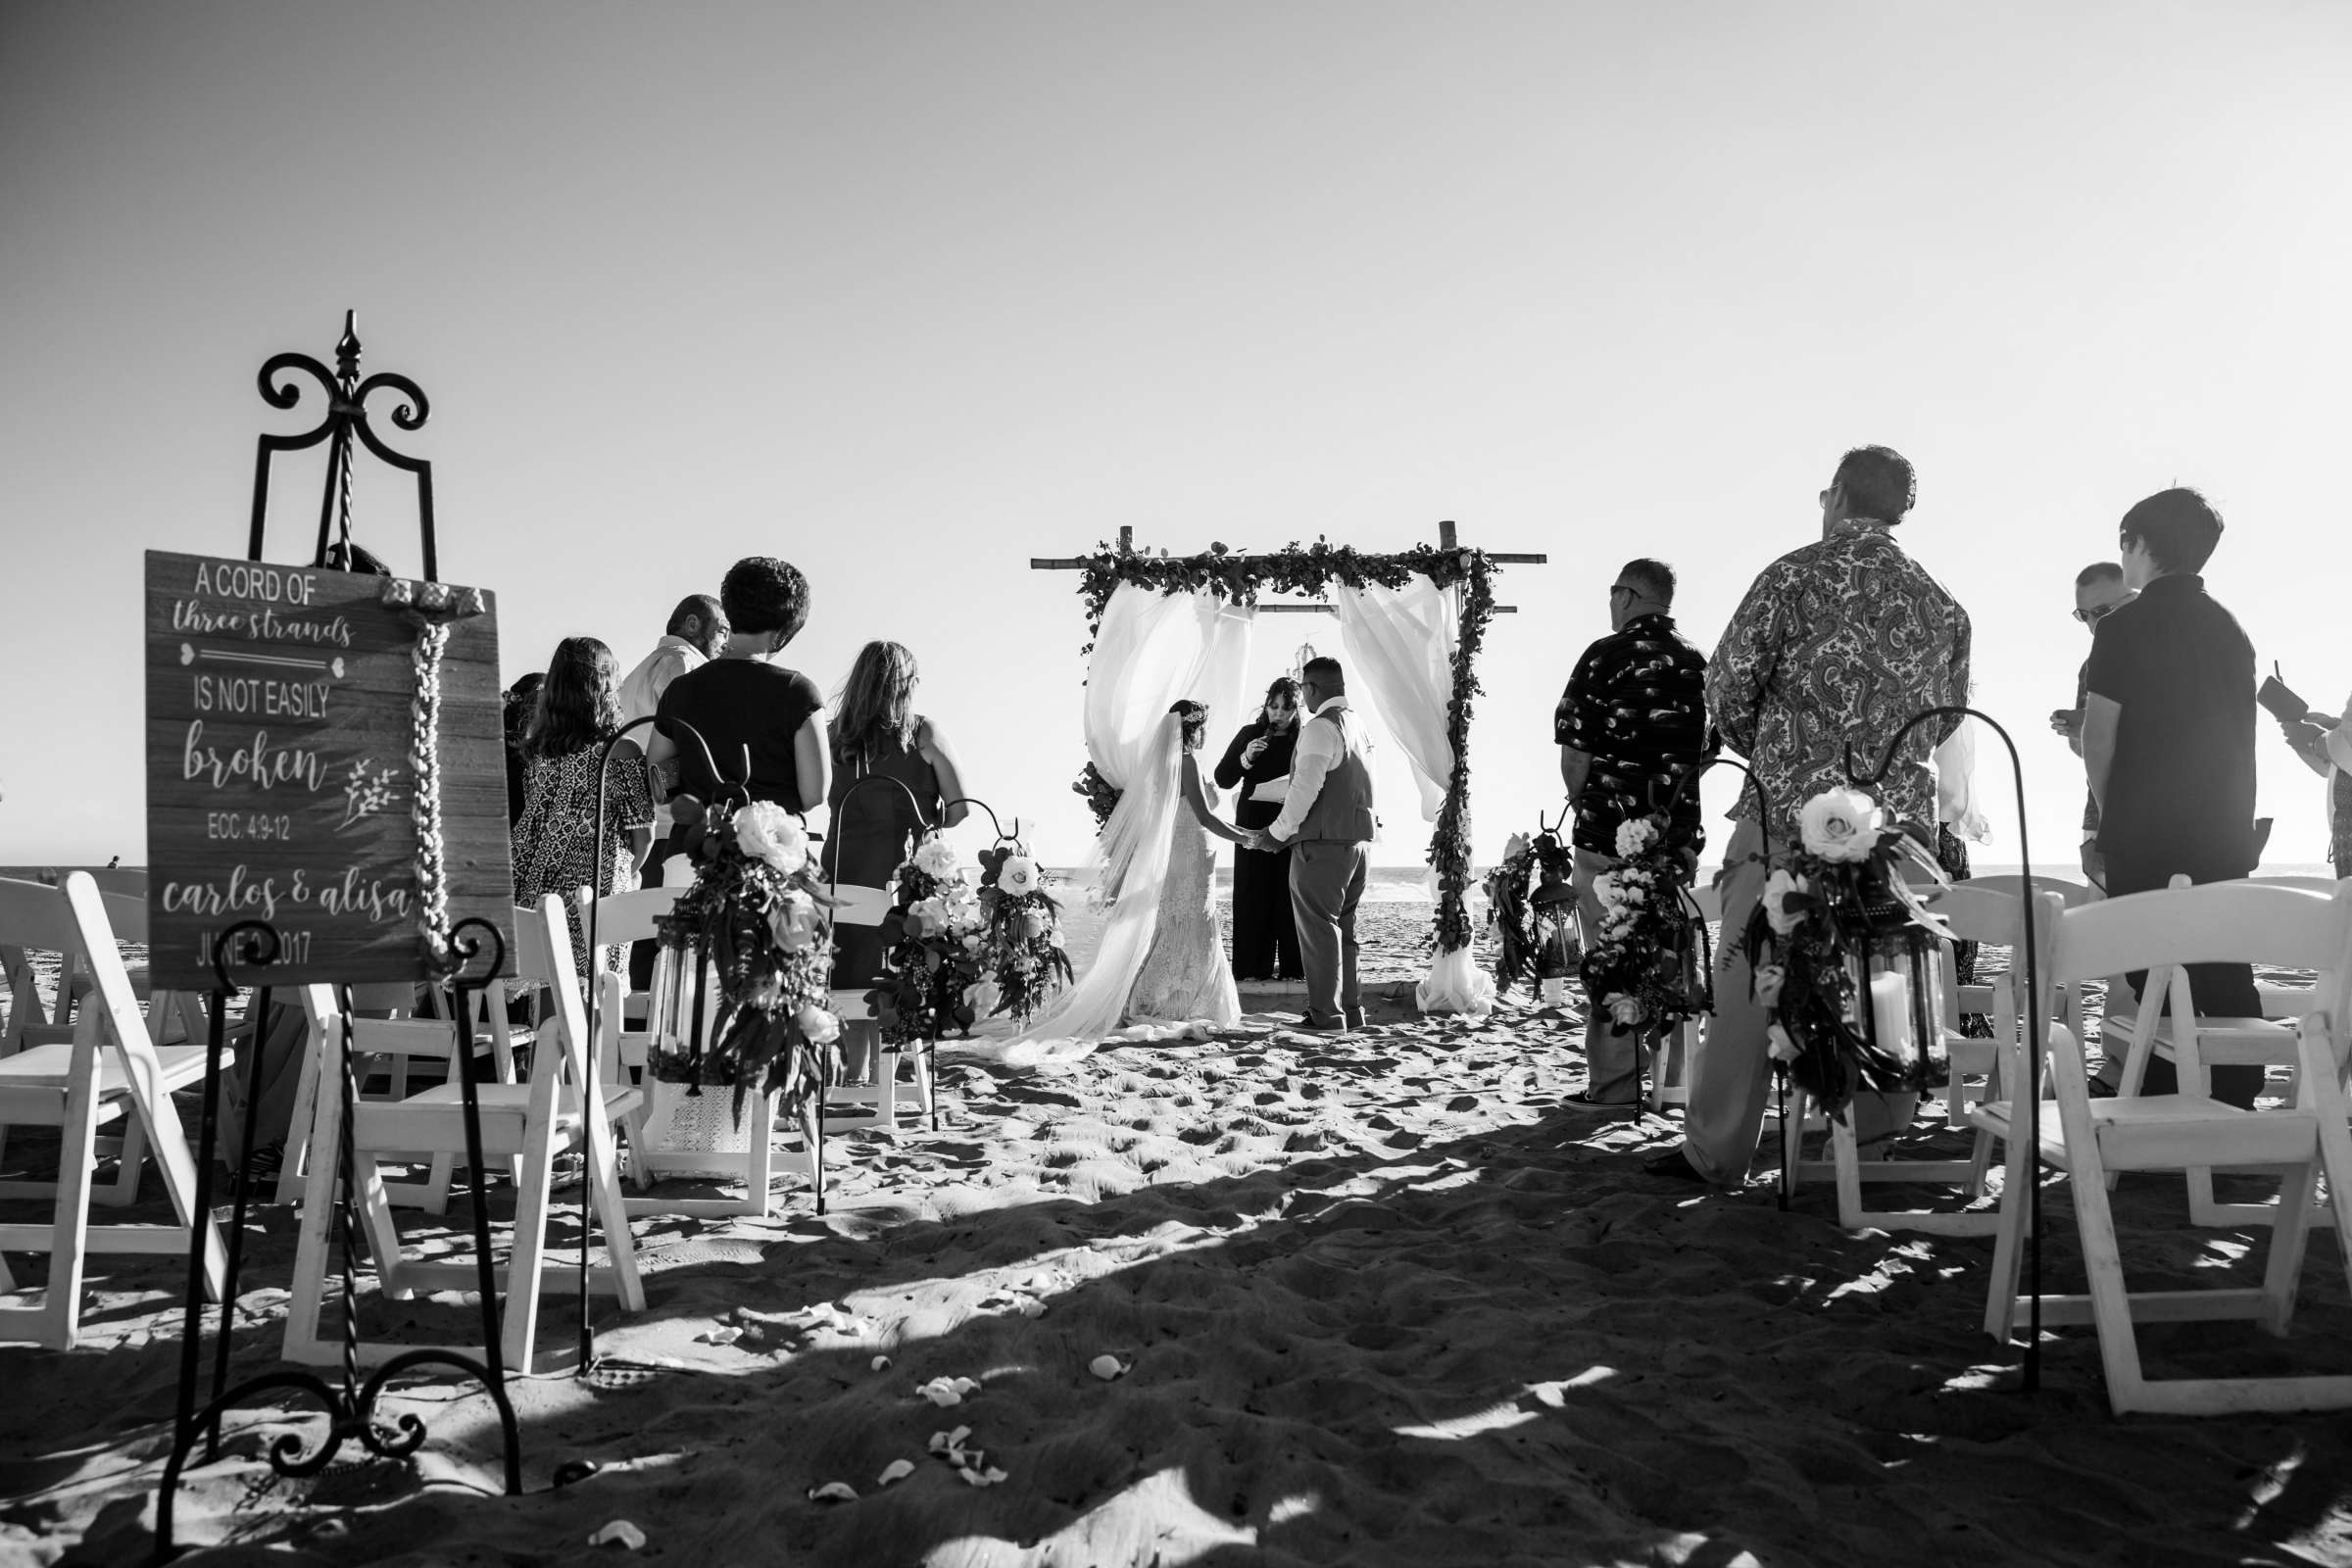 Del Mar Beach Resort Wedding coordinated by La Casa Del Mar, Alisa and Carlos Wedding Photo #380882 by True Photography